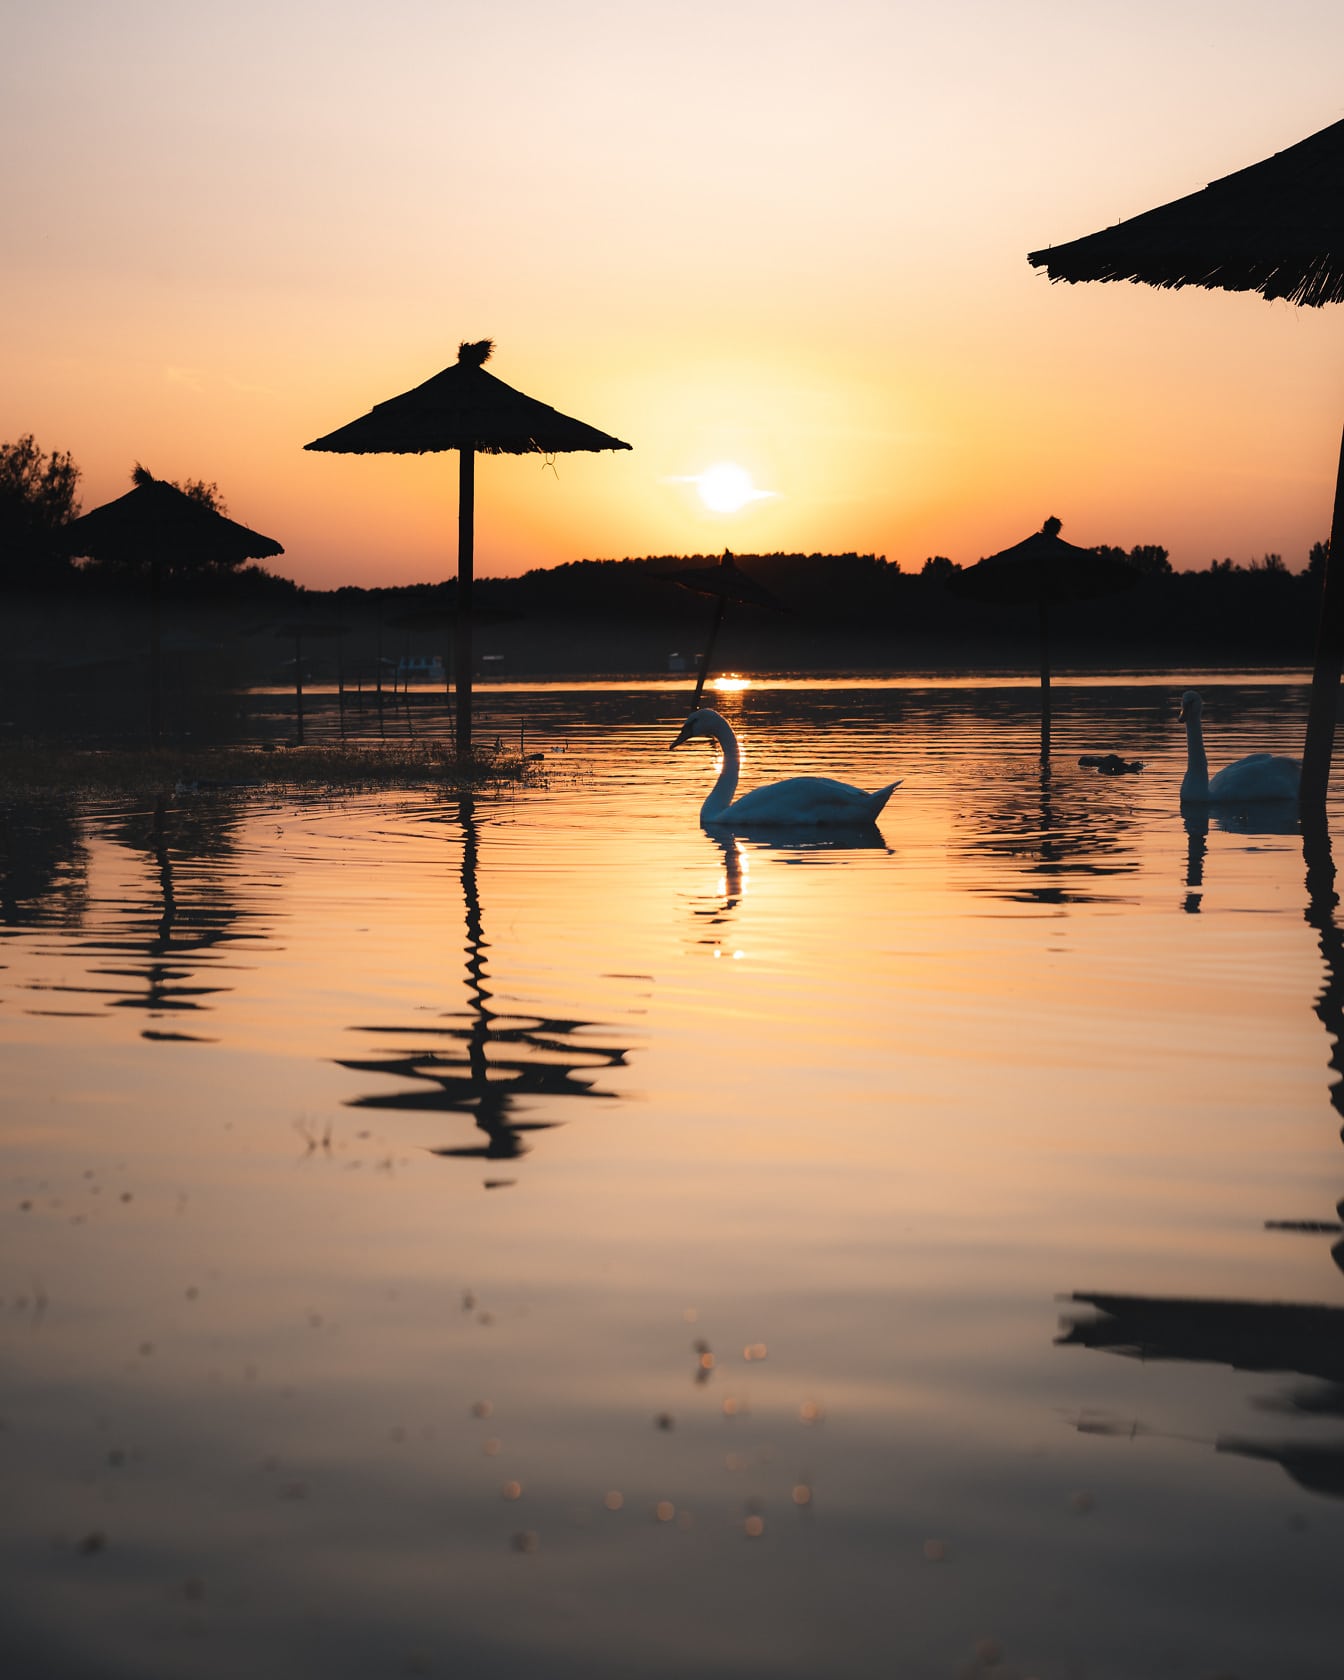 Silhouet van zwaanvogels op meer met parasol in zonsopgang